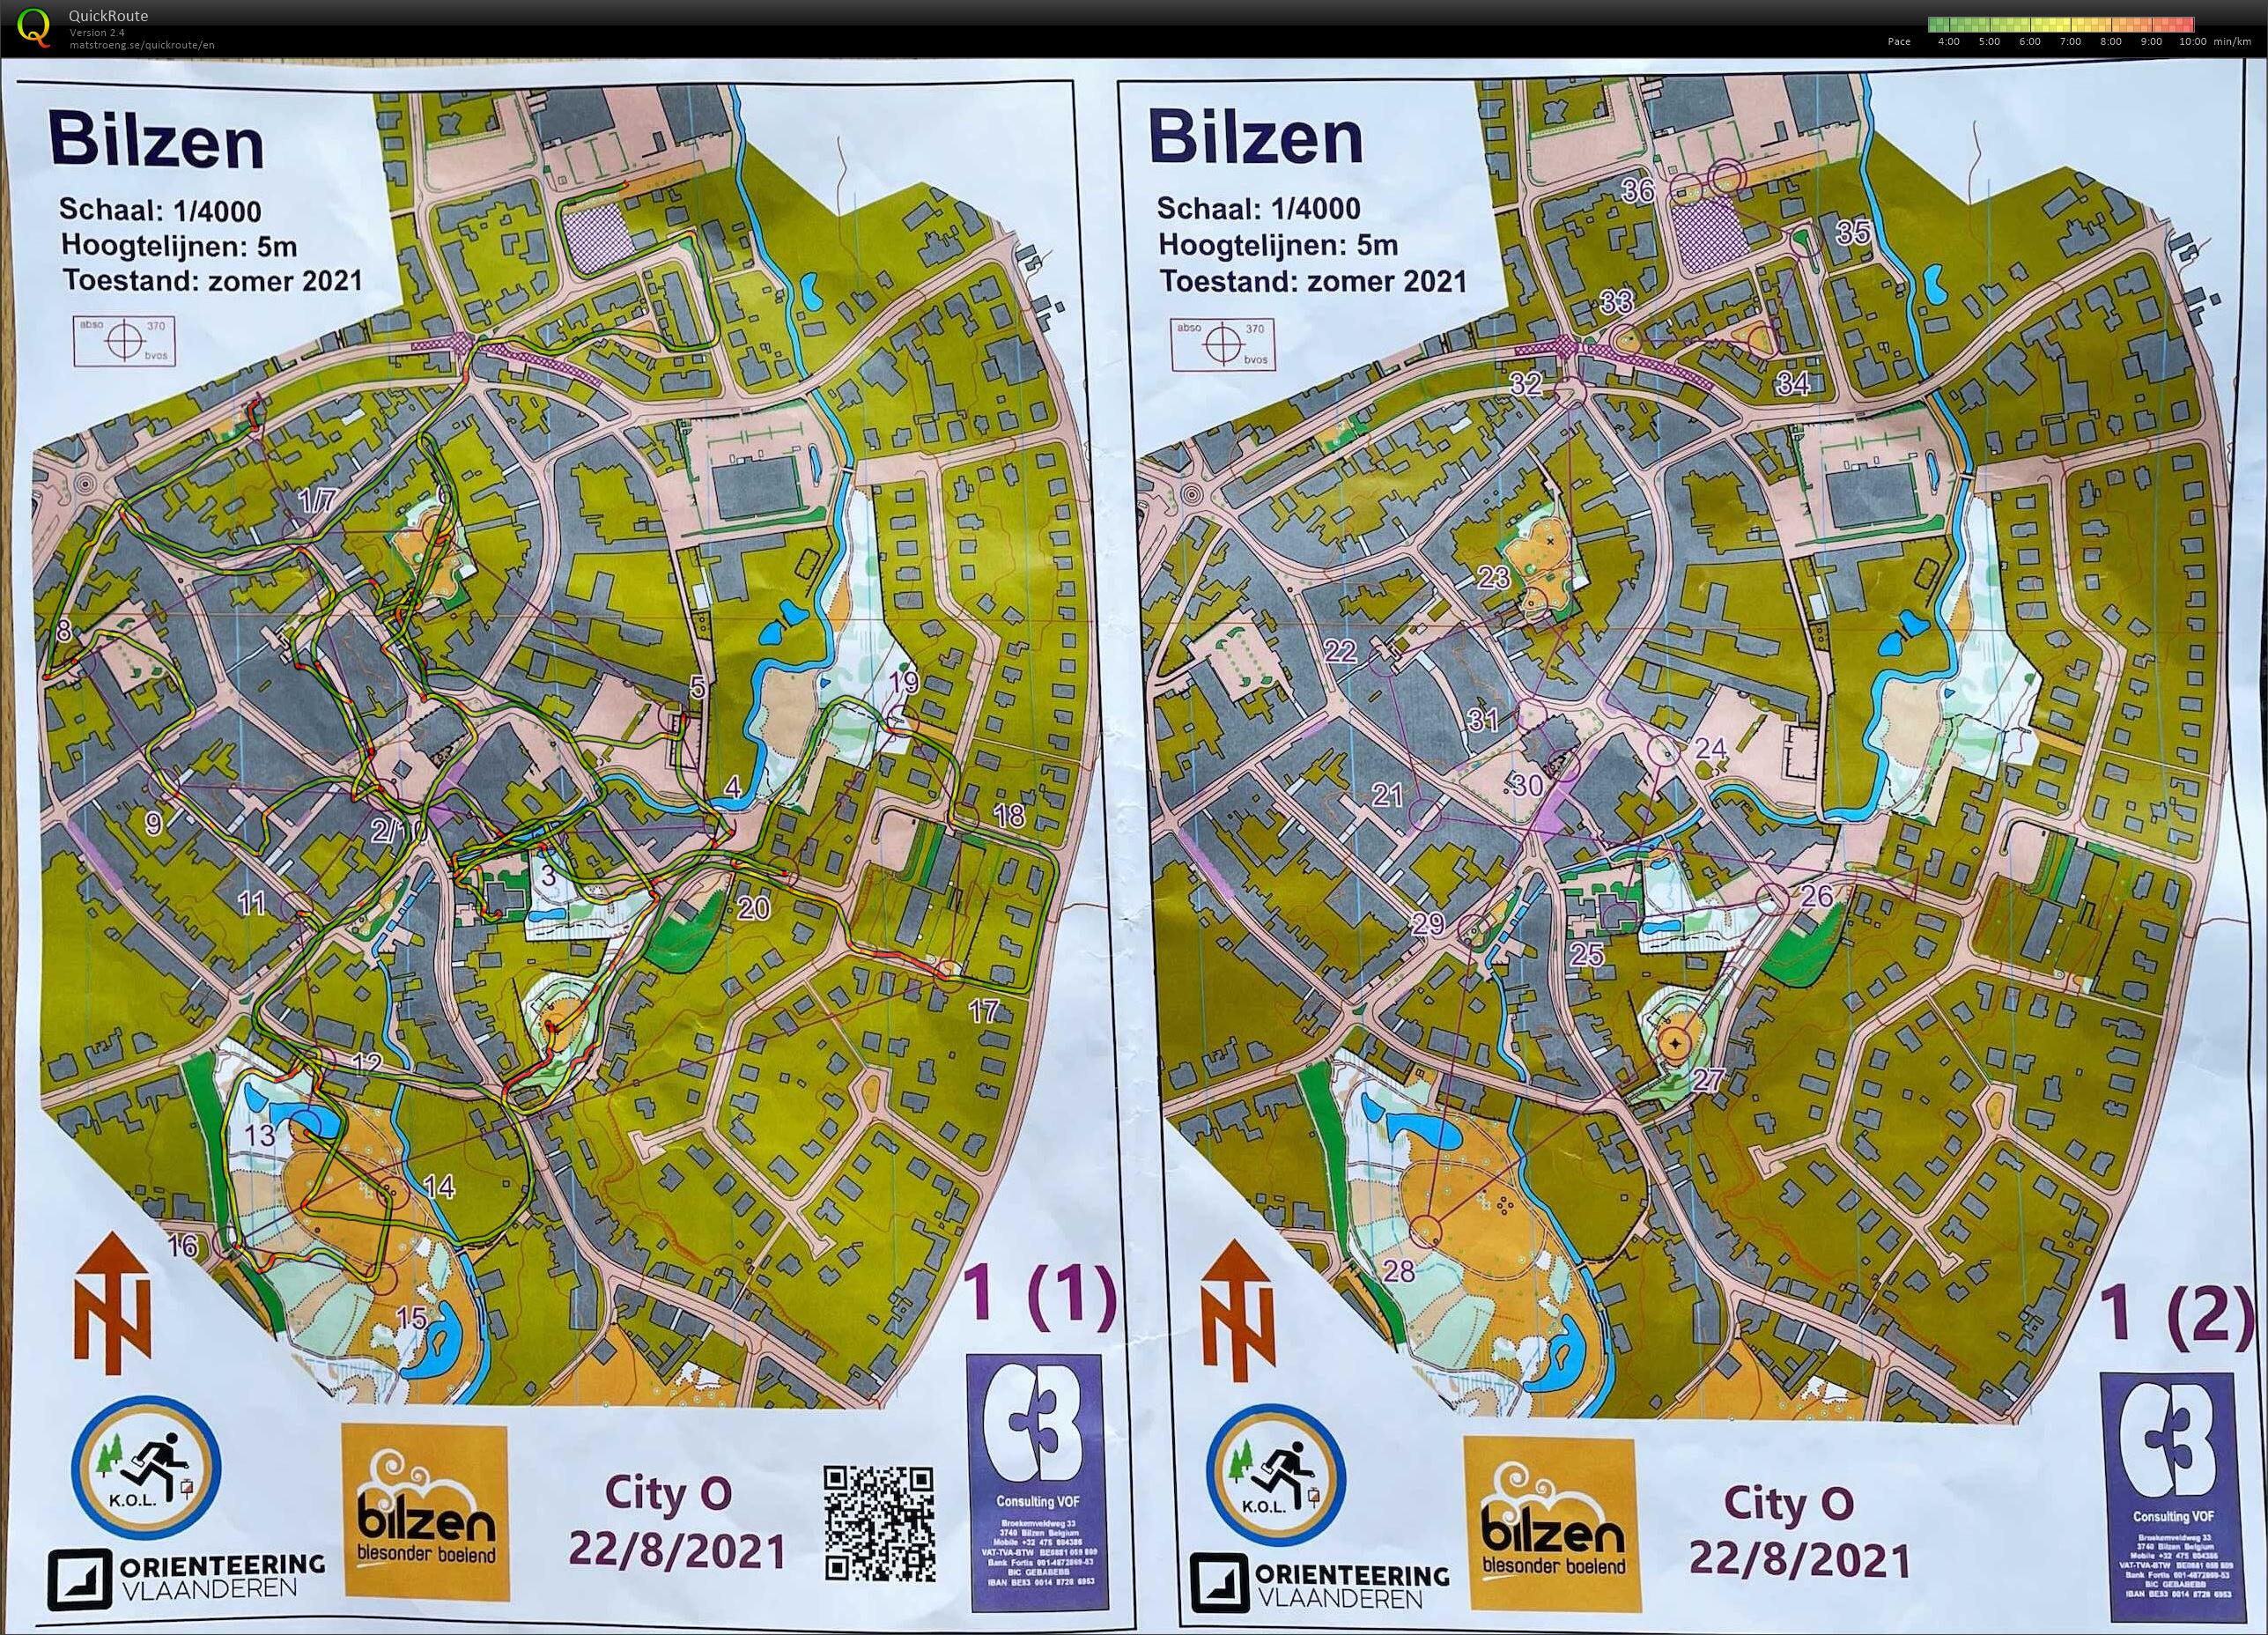 City-O Bilzen (22/08/2021)